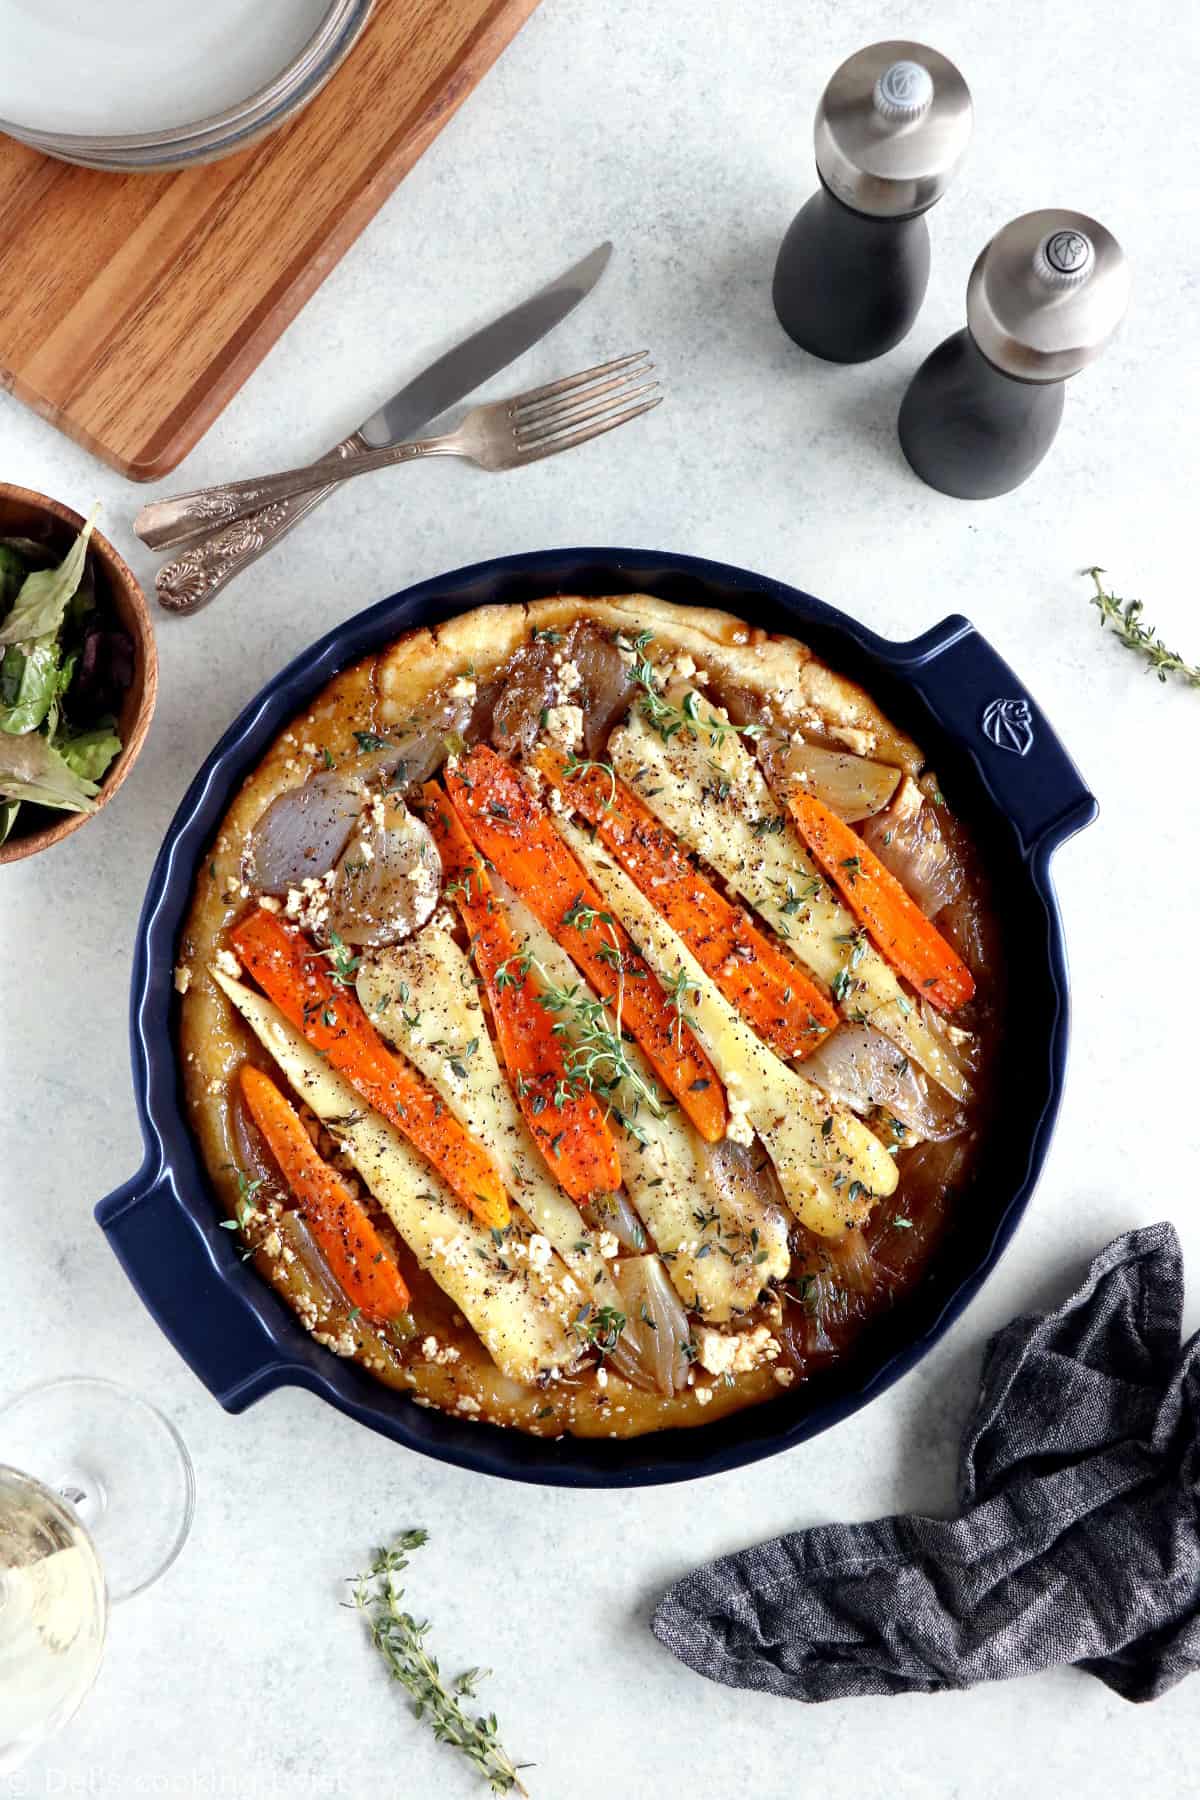 Tarte tatin aux panais, carottes et échalotes - Del's cooking twist